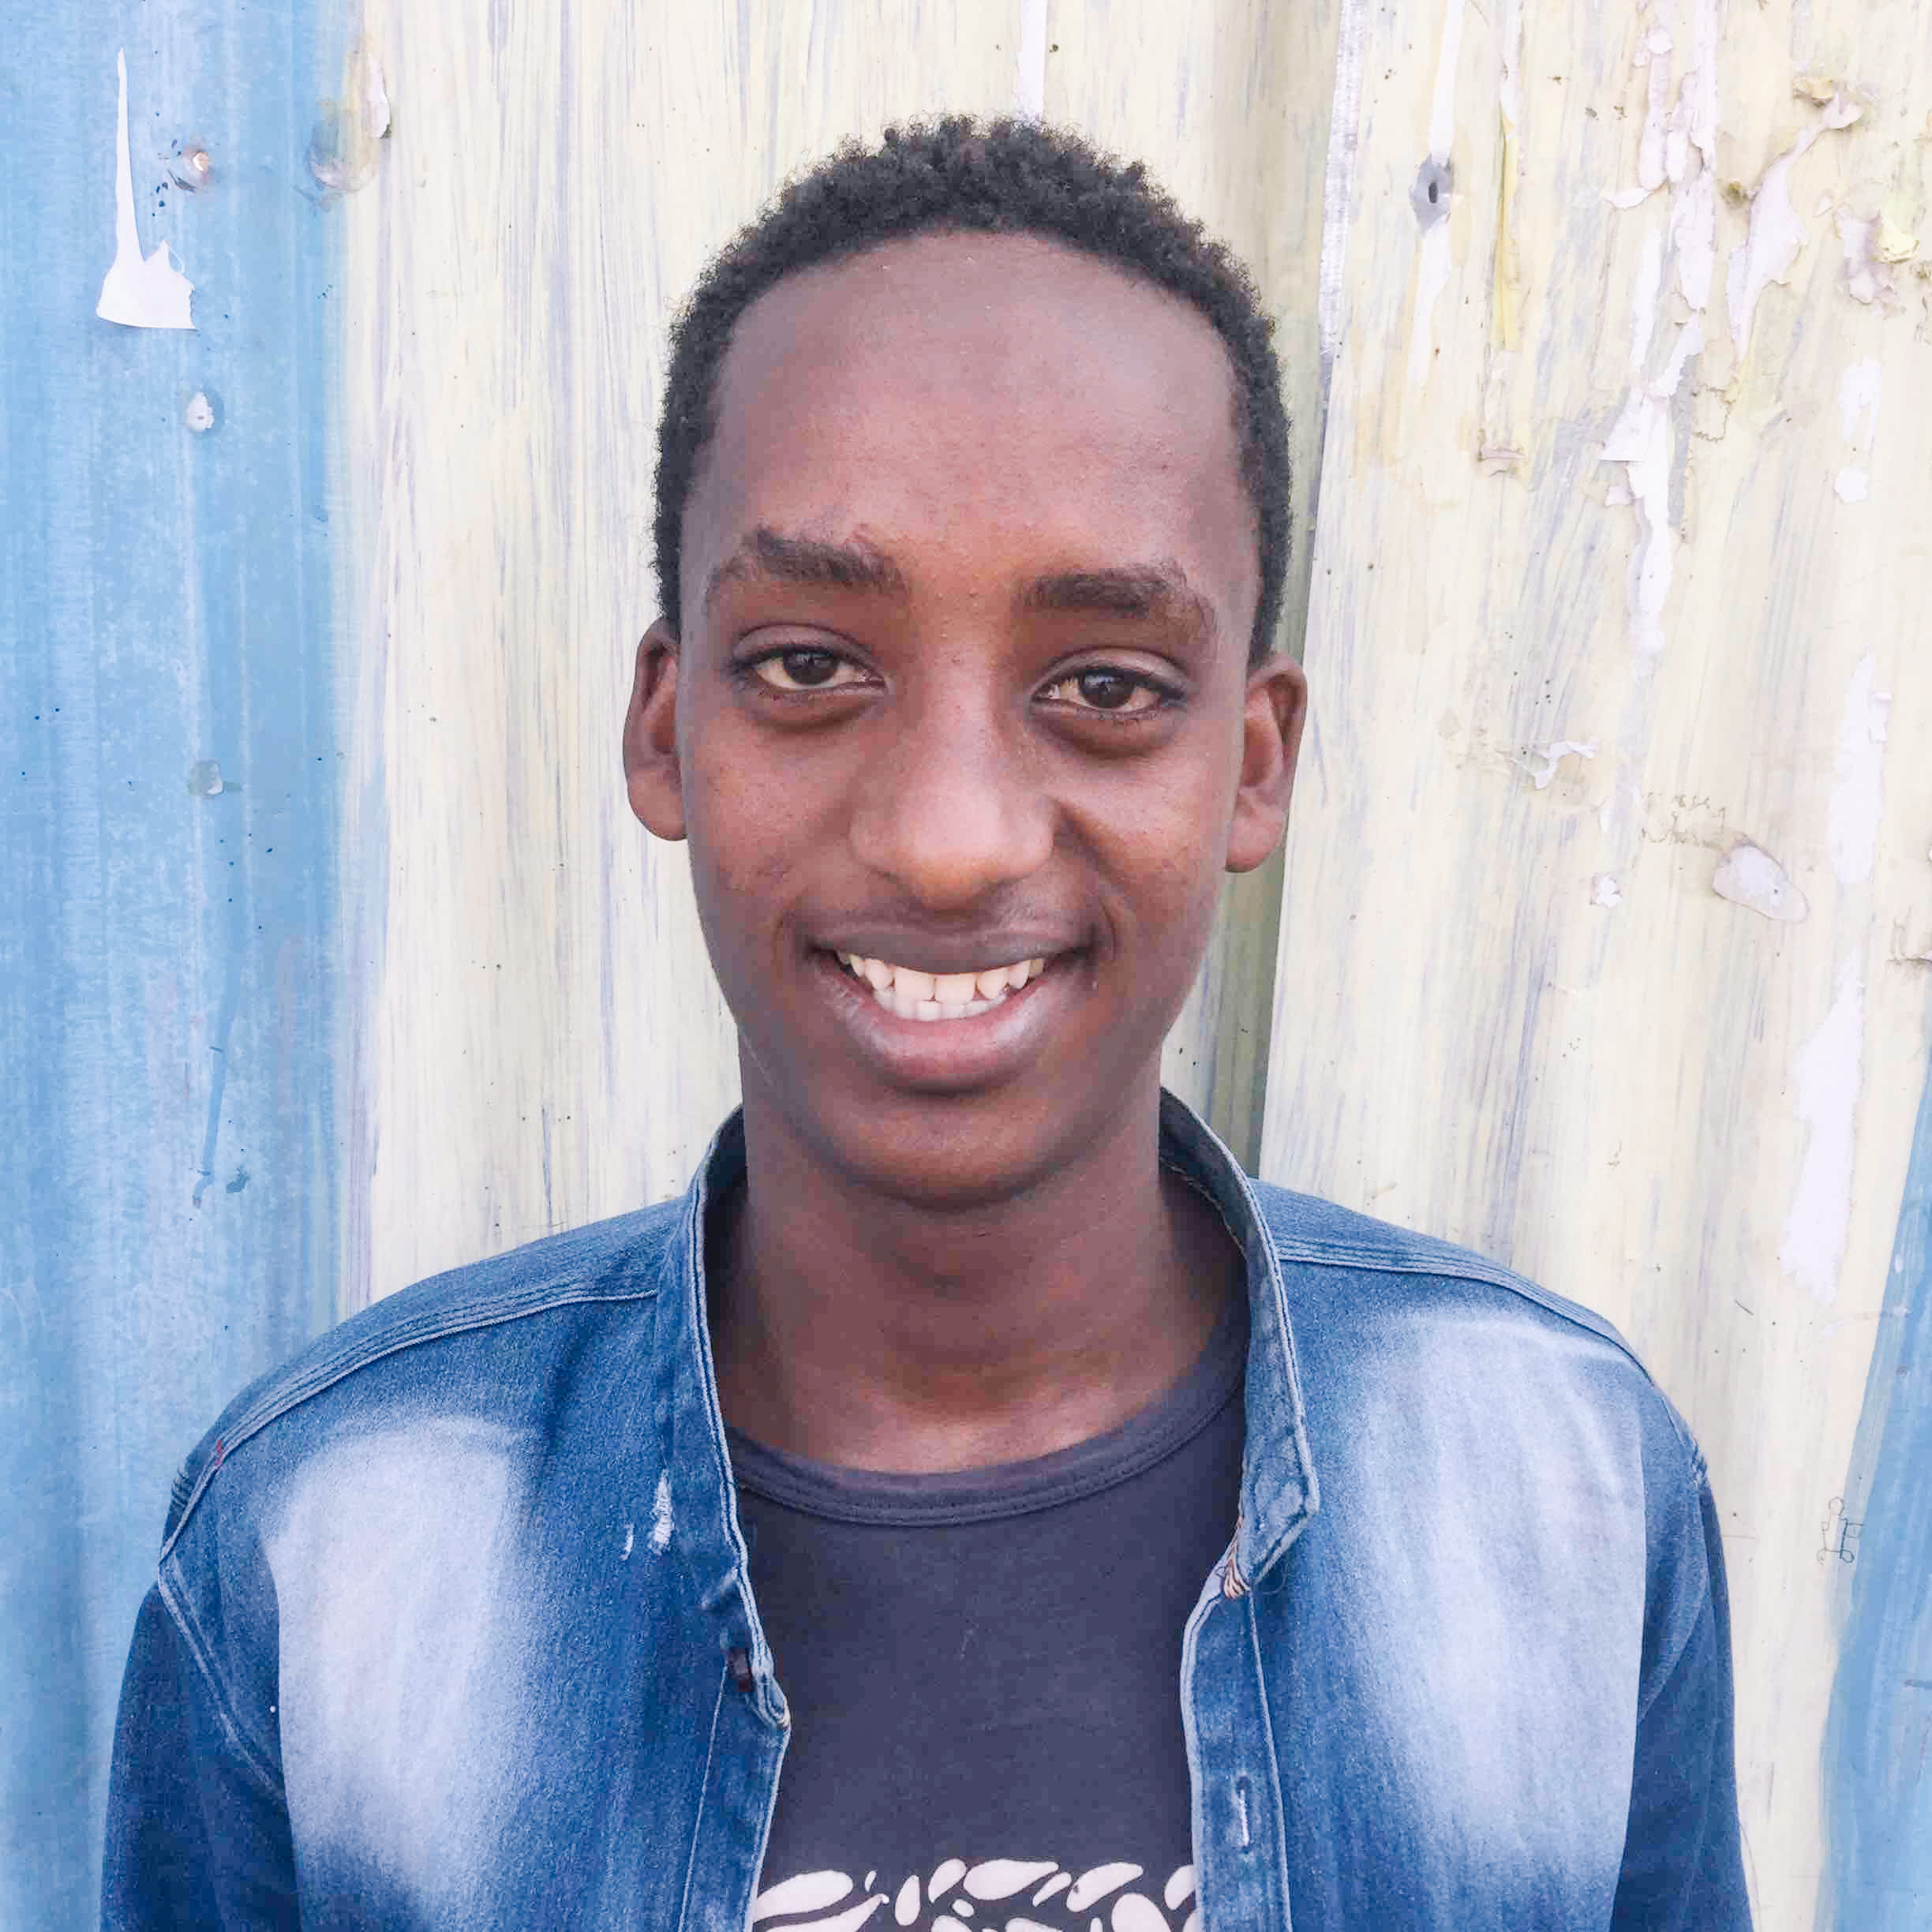 A boy in Ethiopia smiles